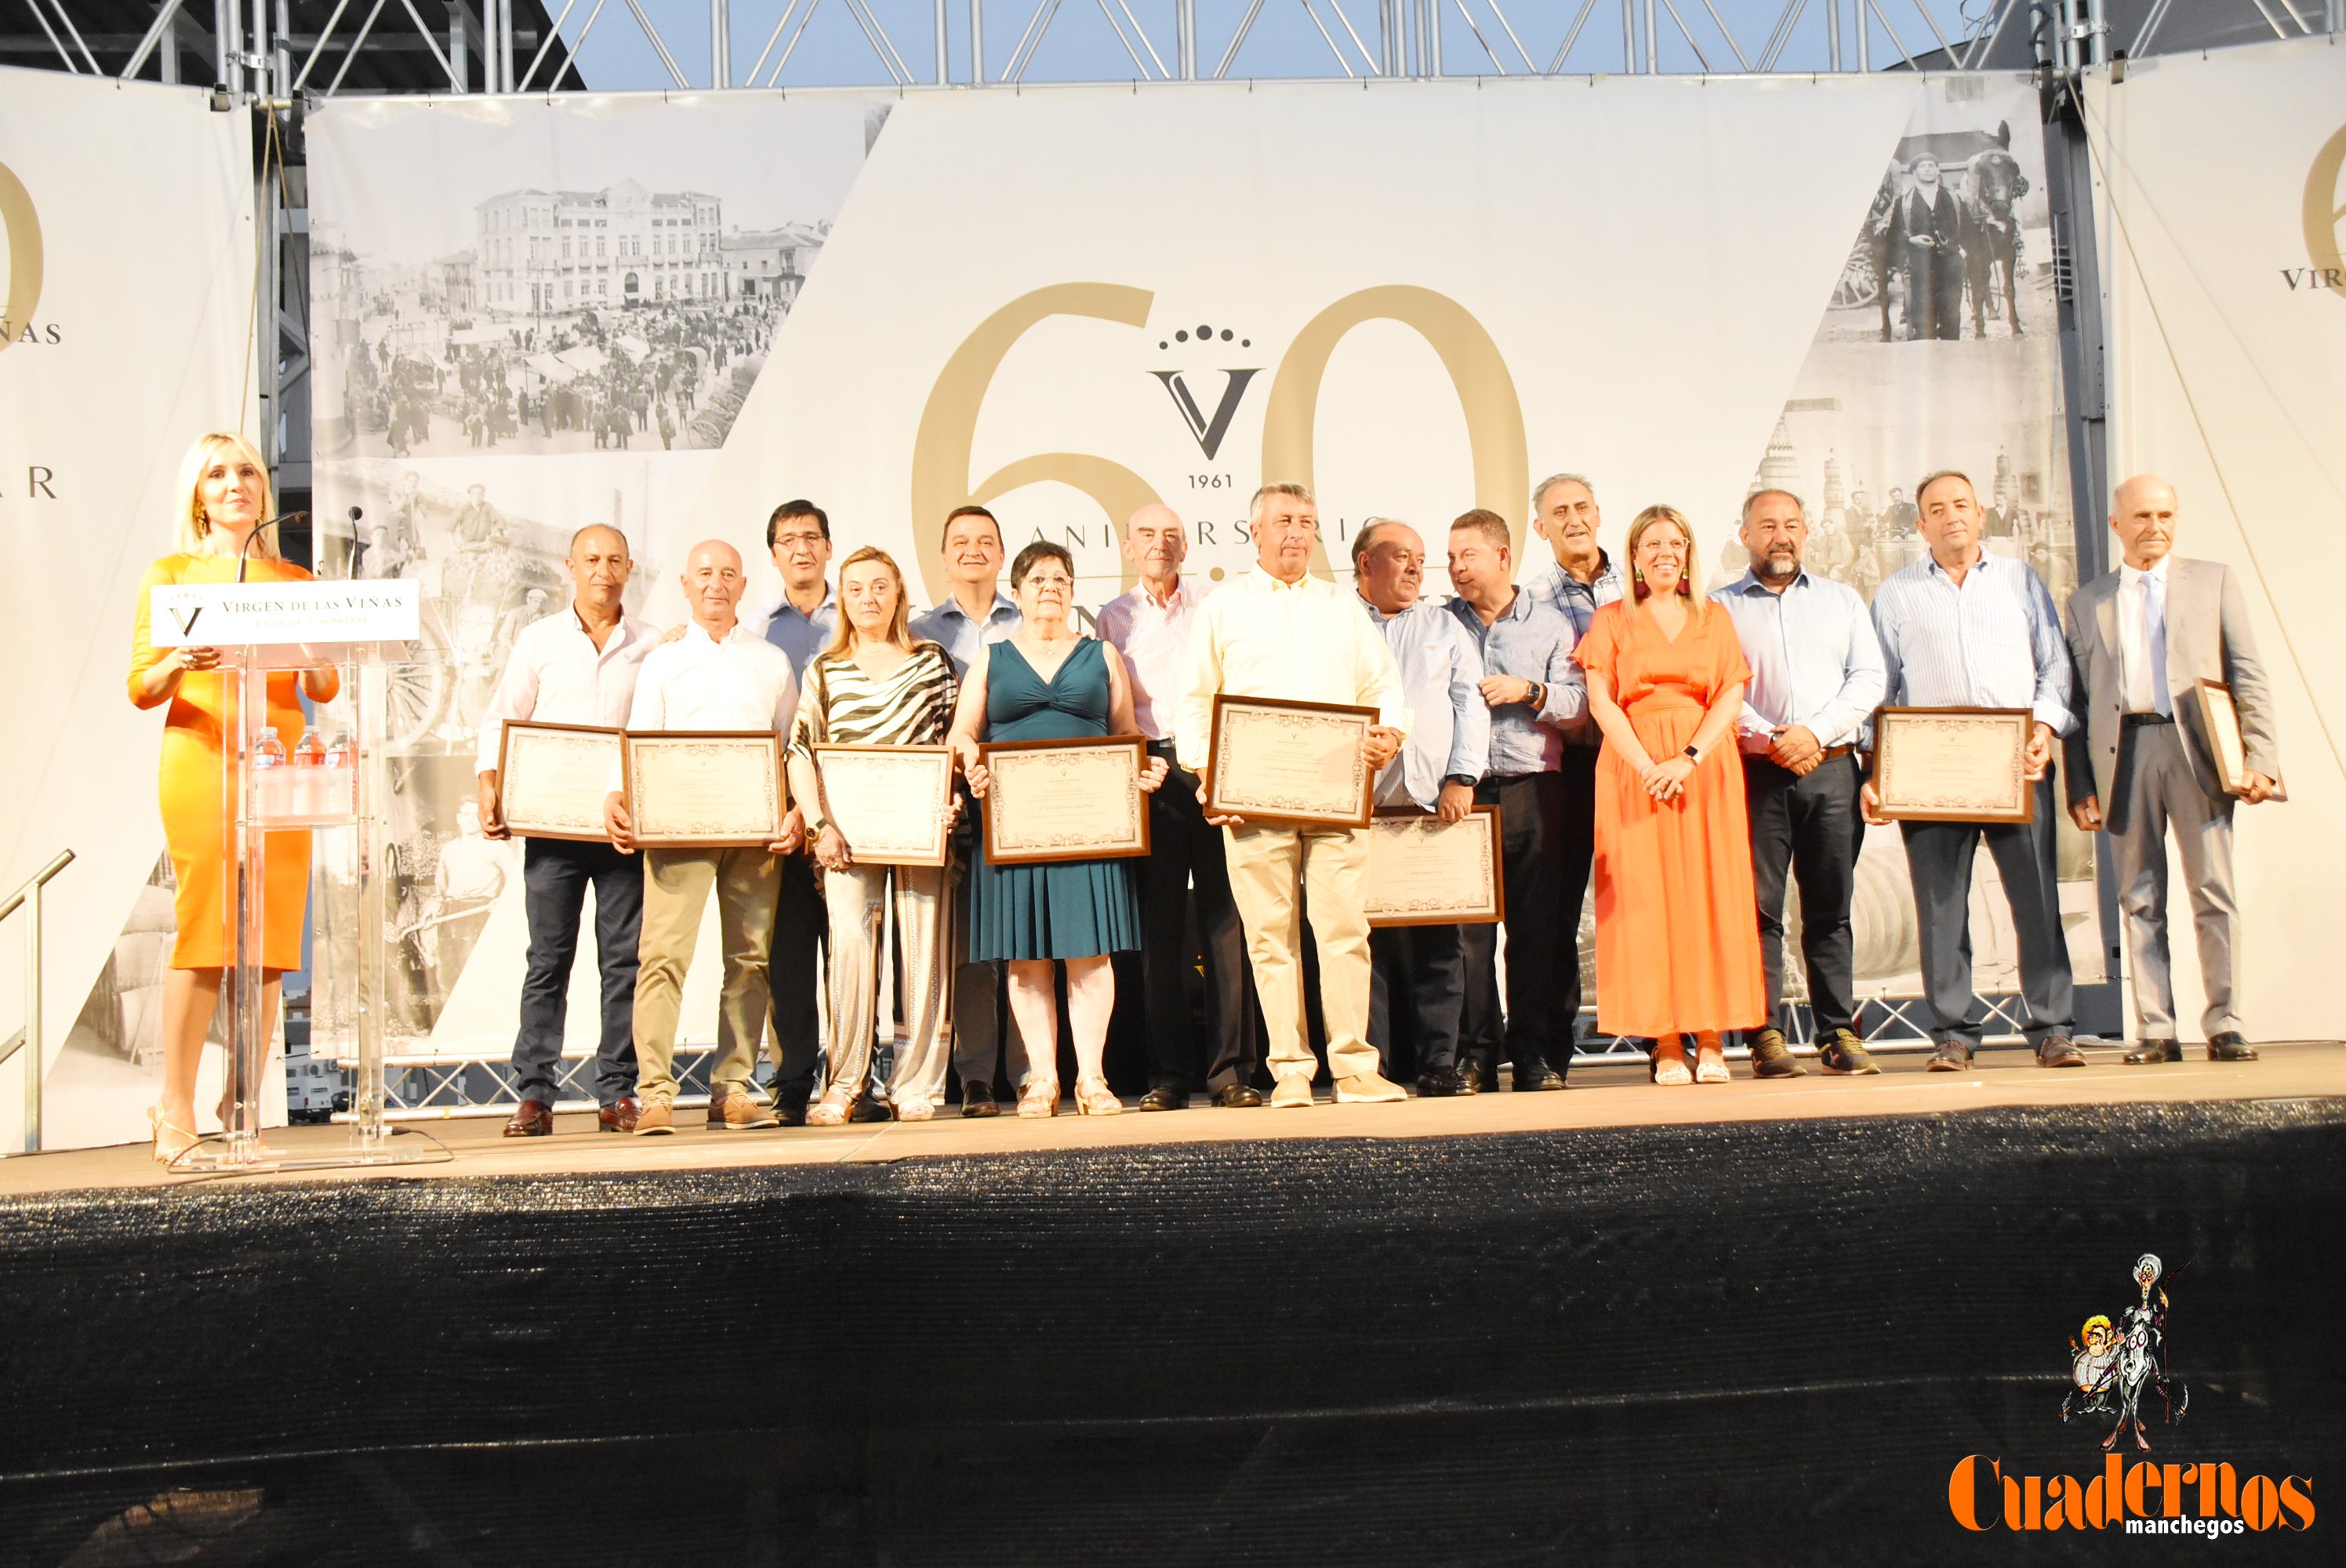 Celebración 60 aniversario virgen de las Viñas de Tomelloso